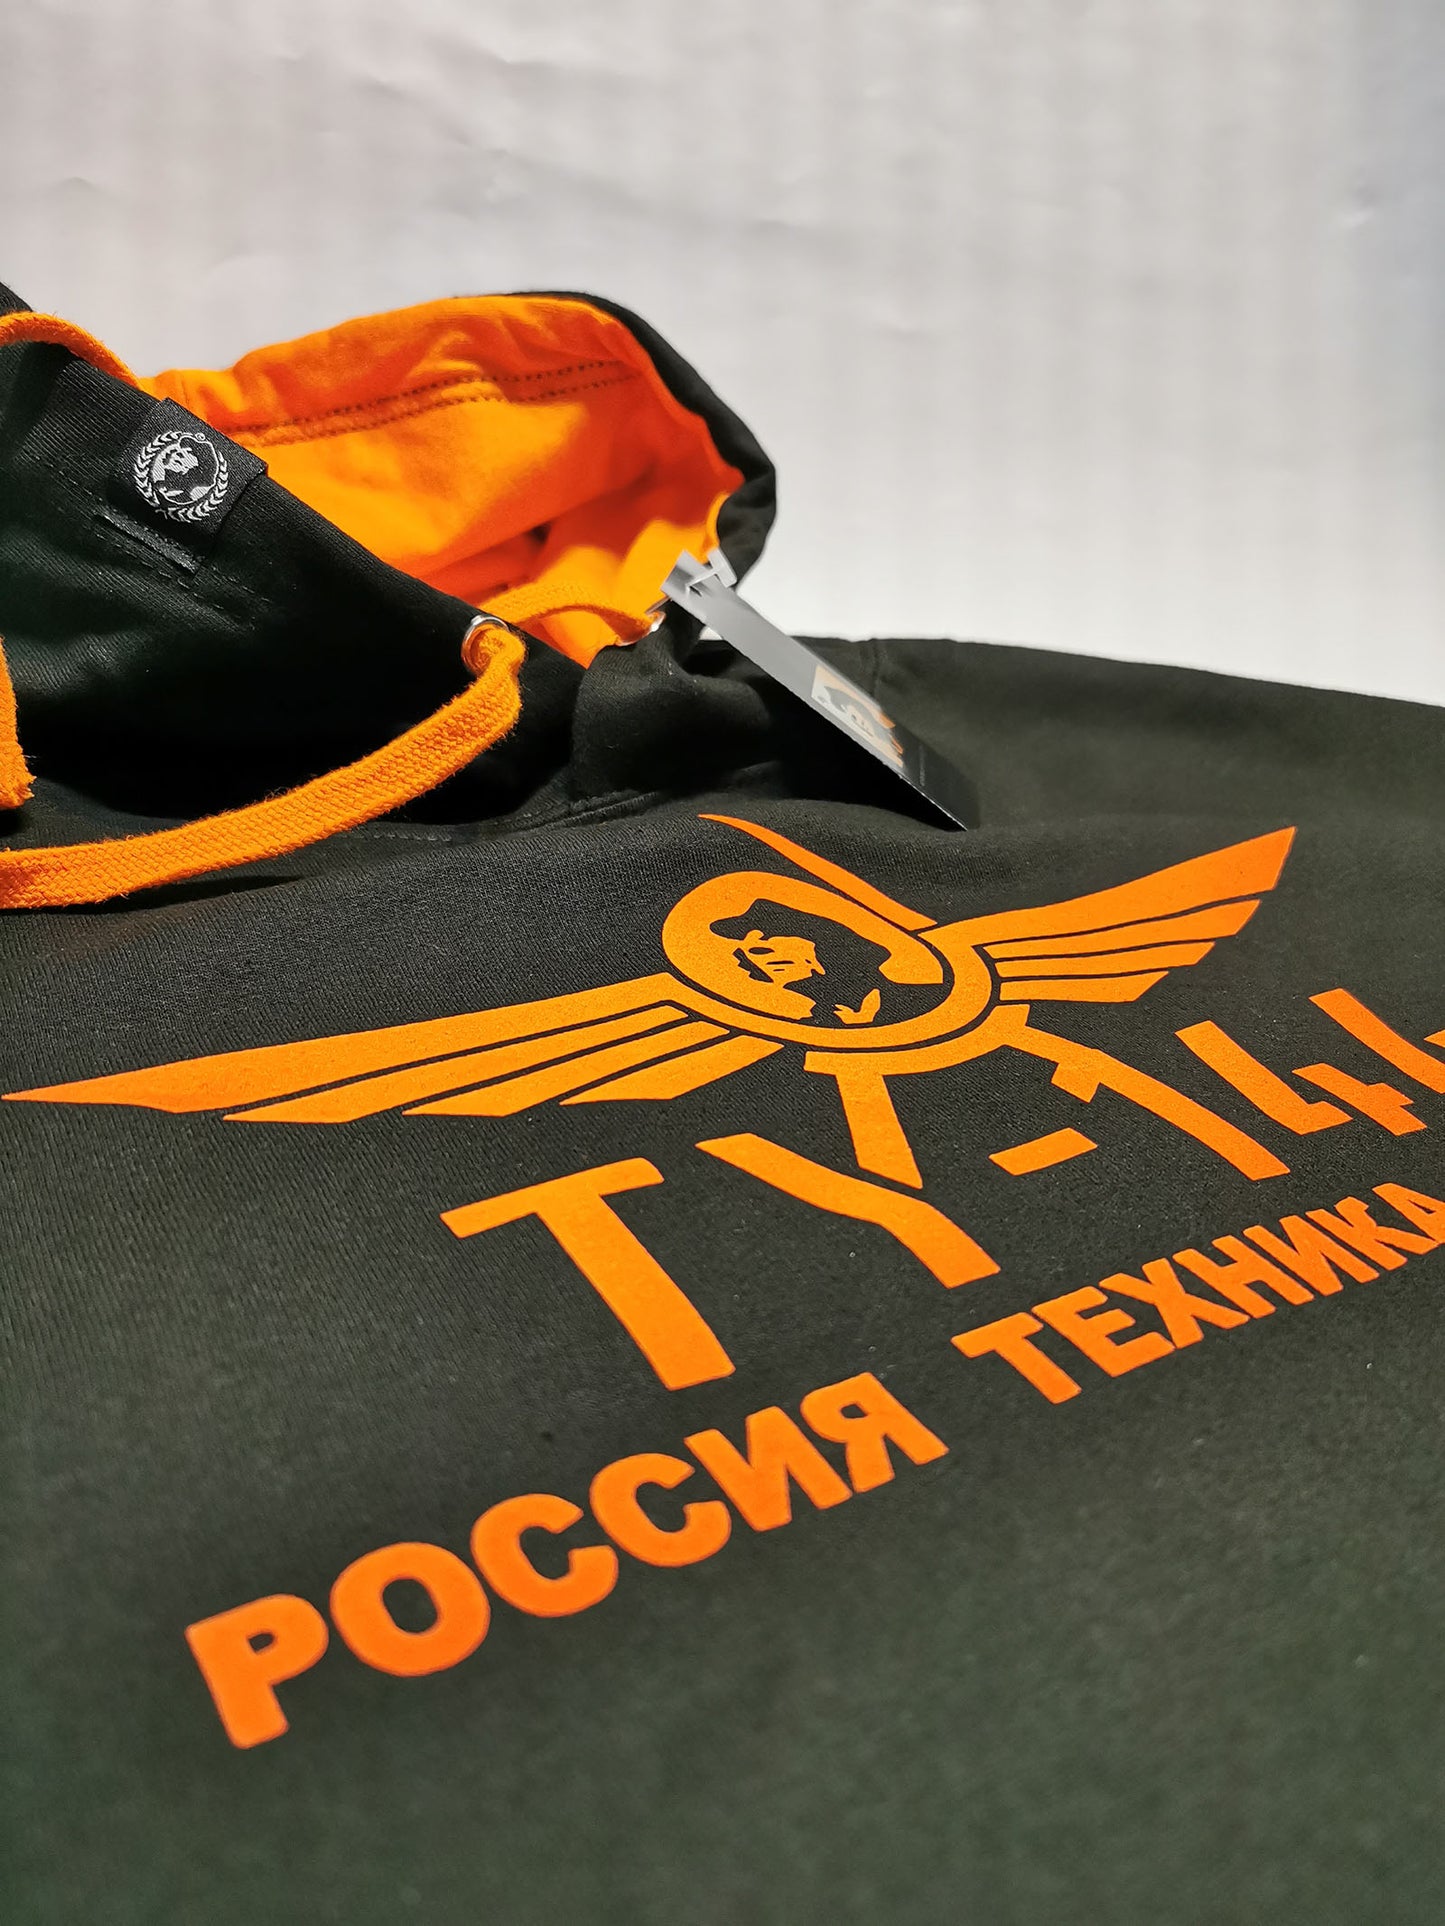 TU-144 - Unisex/Men's Bi-color Hoodie - Black / Orange